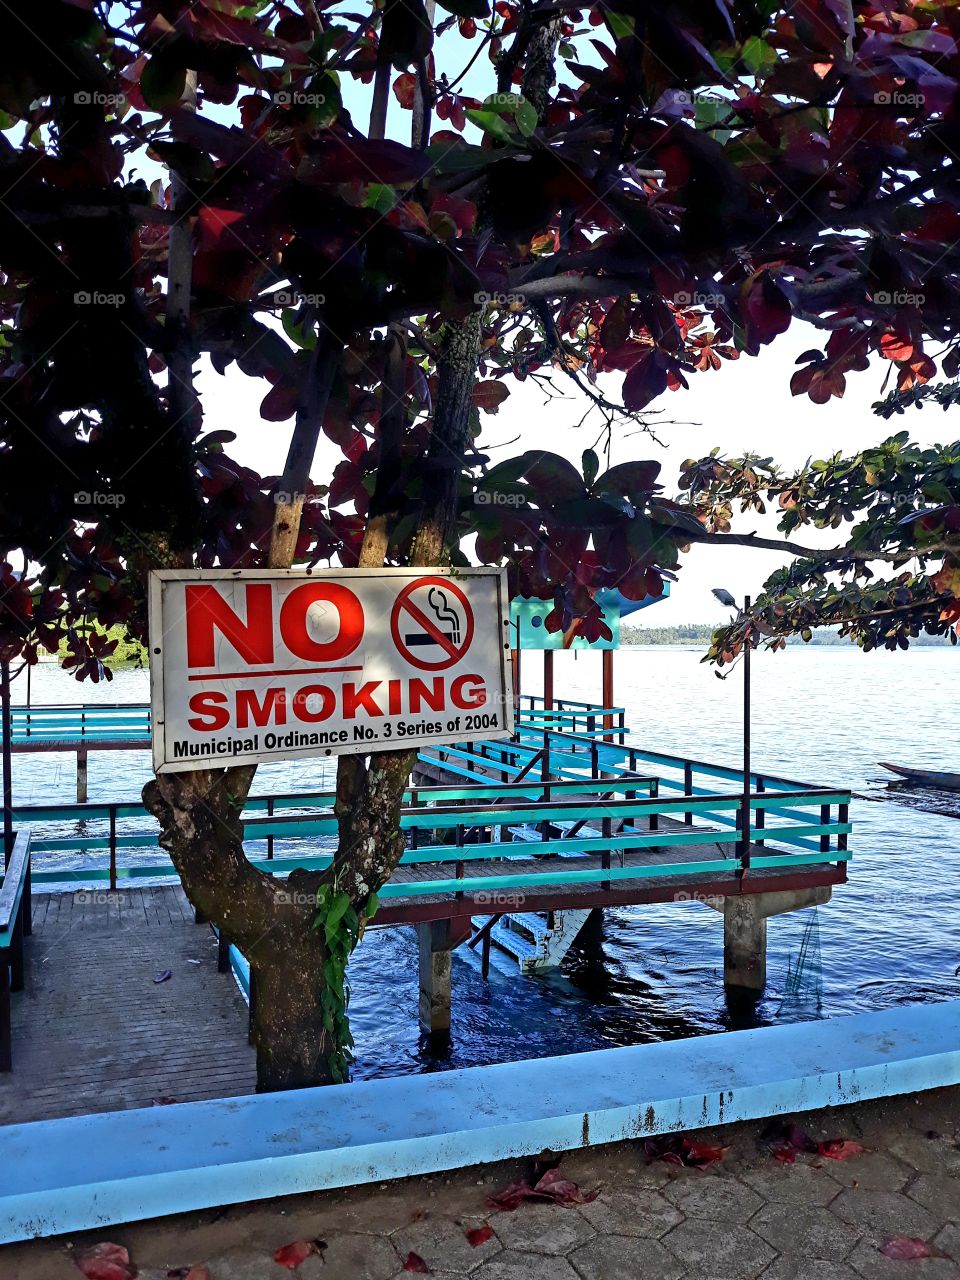 No Smoking sign at the Baypark in Bayabas, Surigao del Sur Philippines